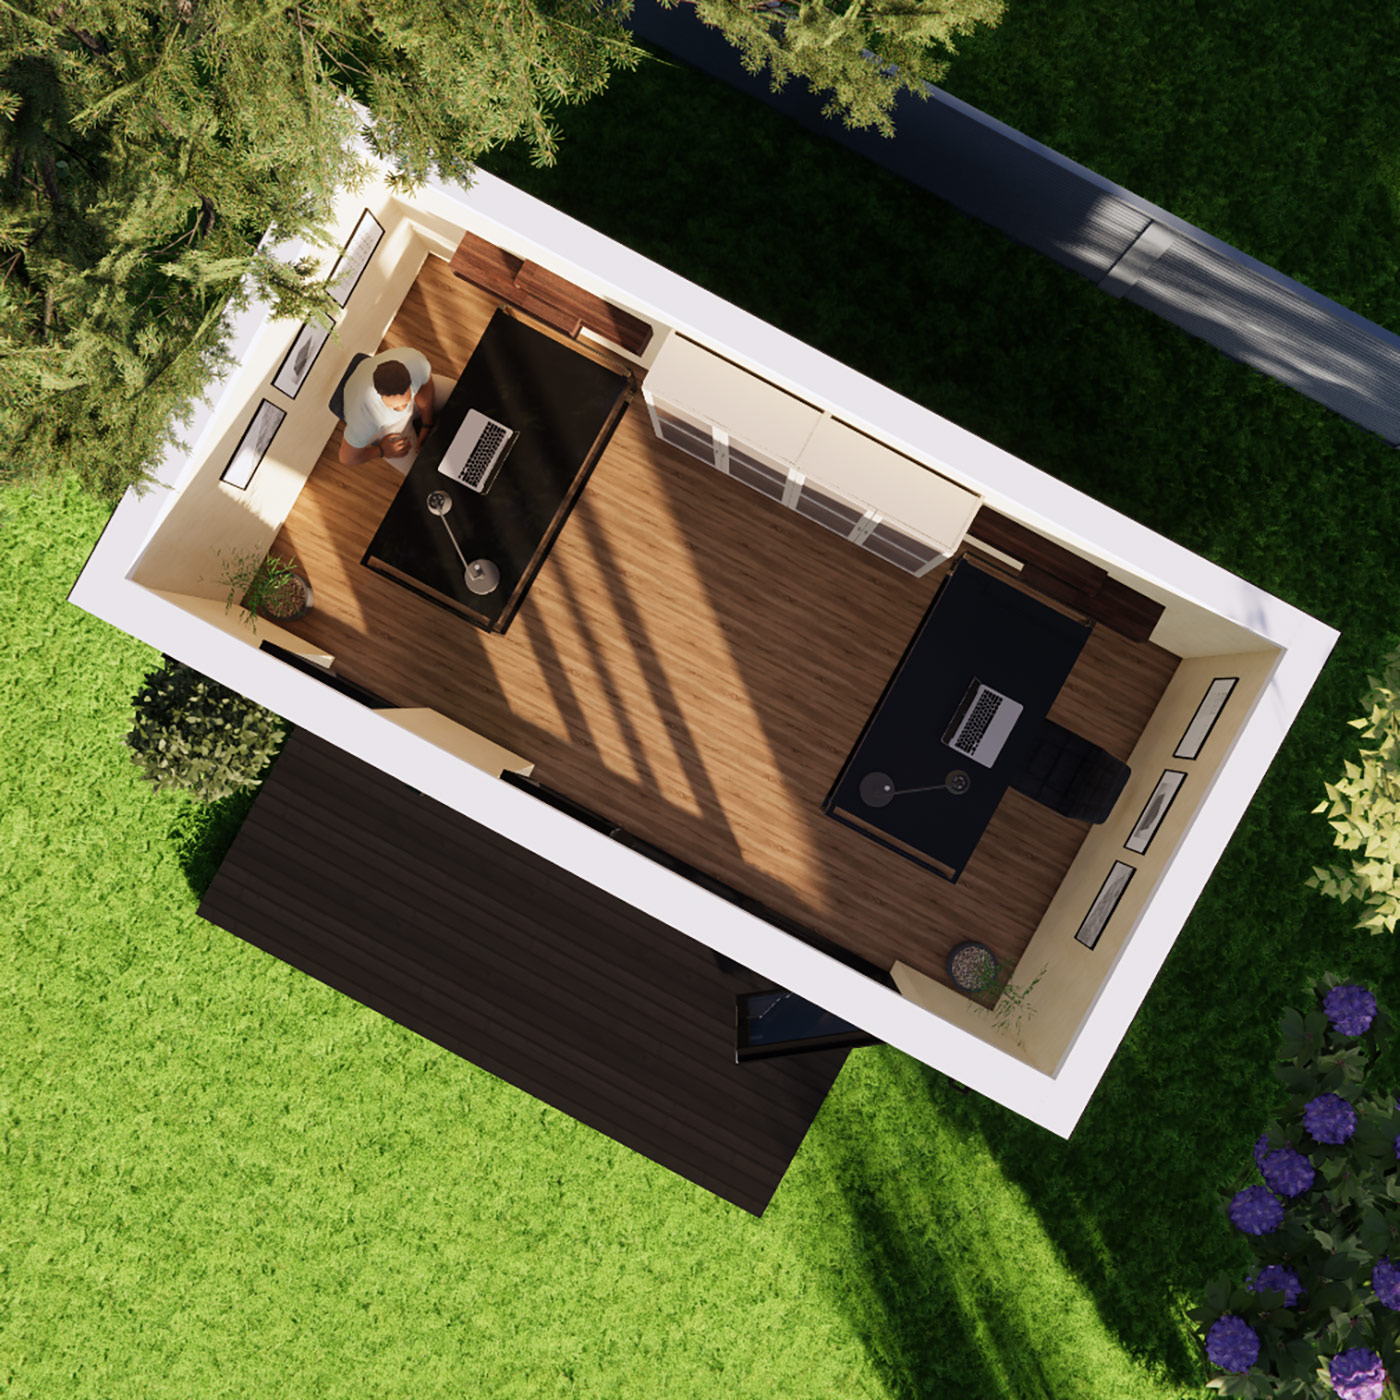 Floorplan visualisation of 2.6m by 5.0m garden office